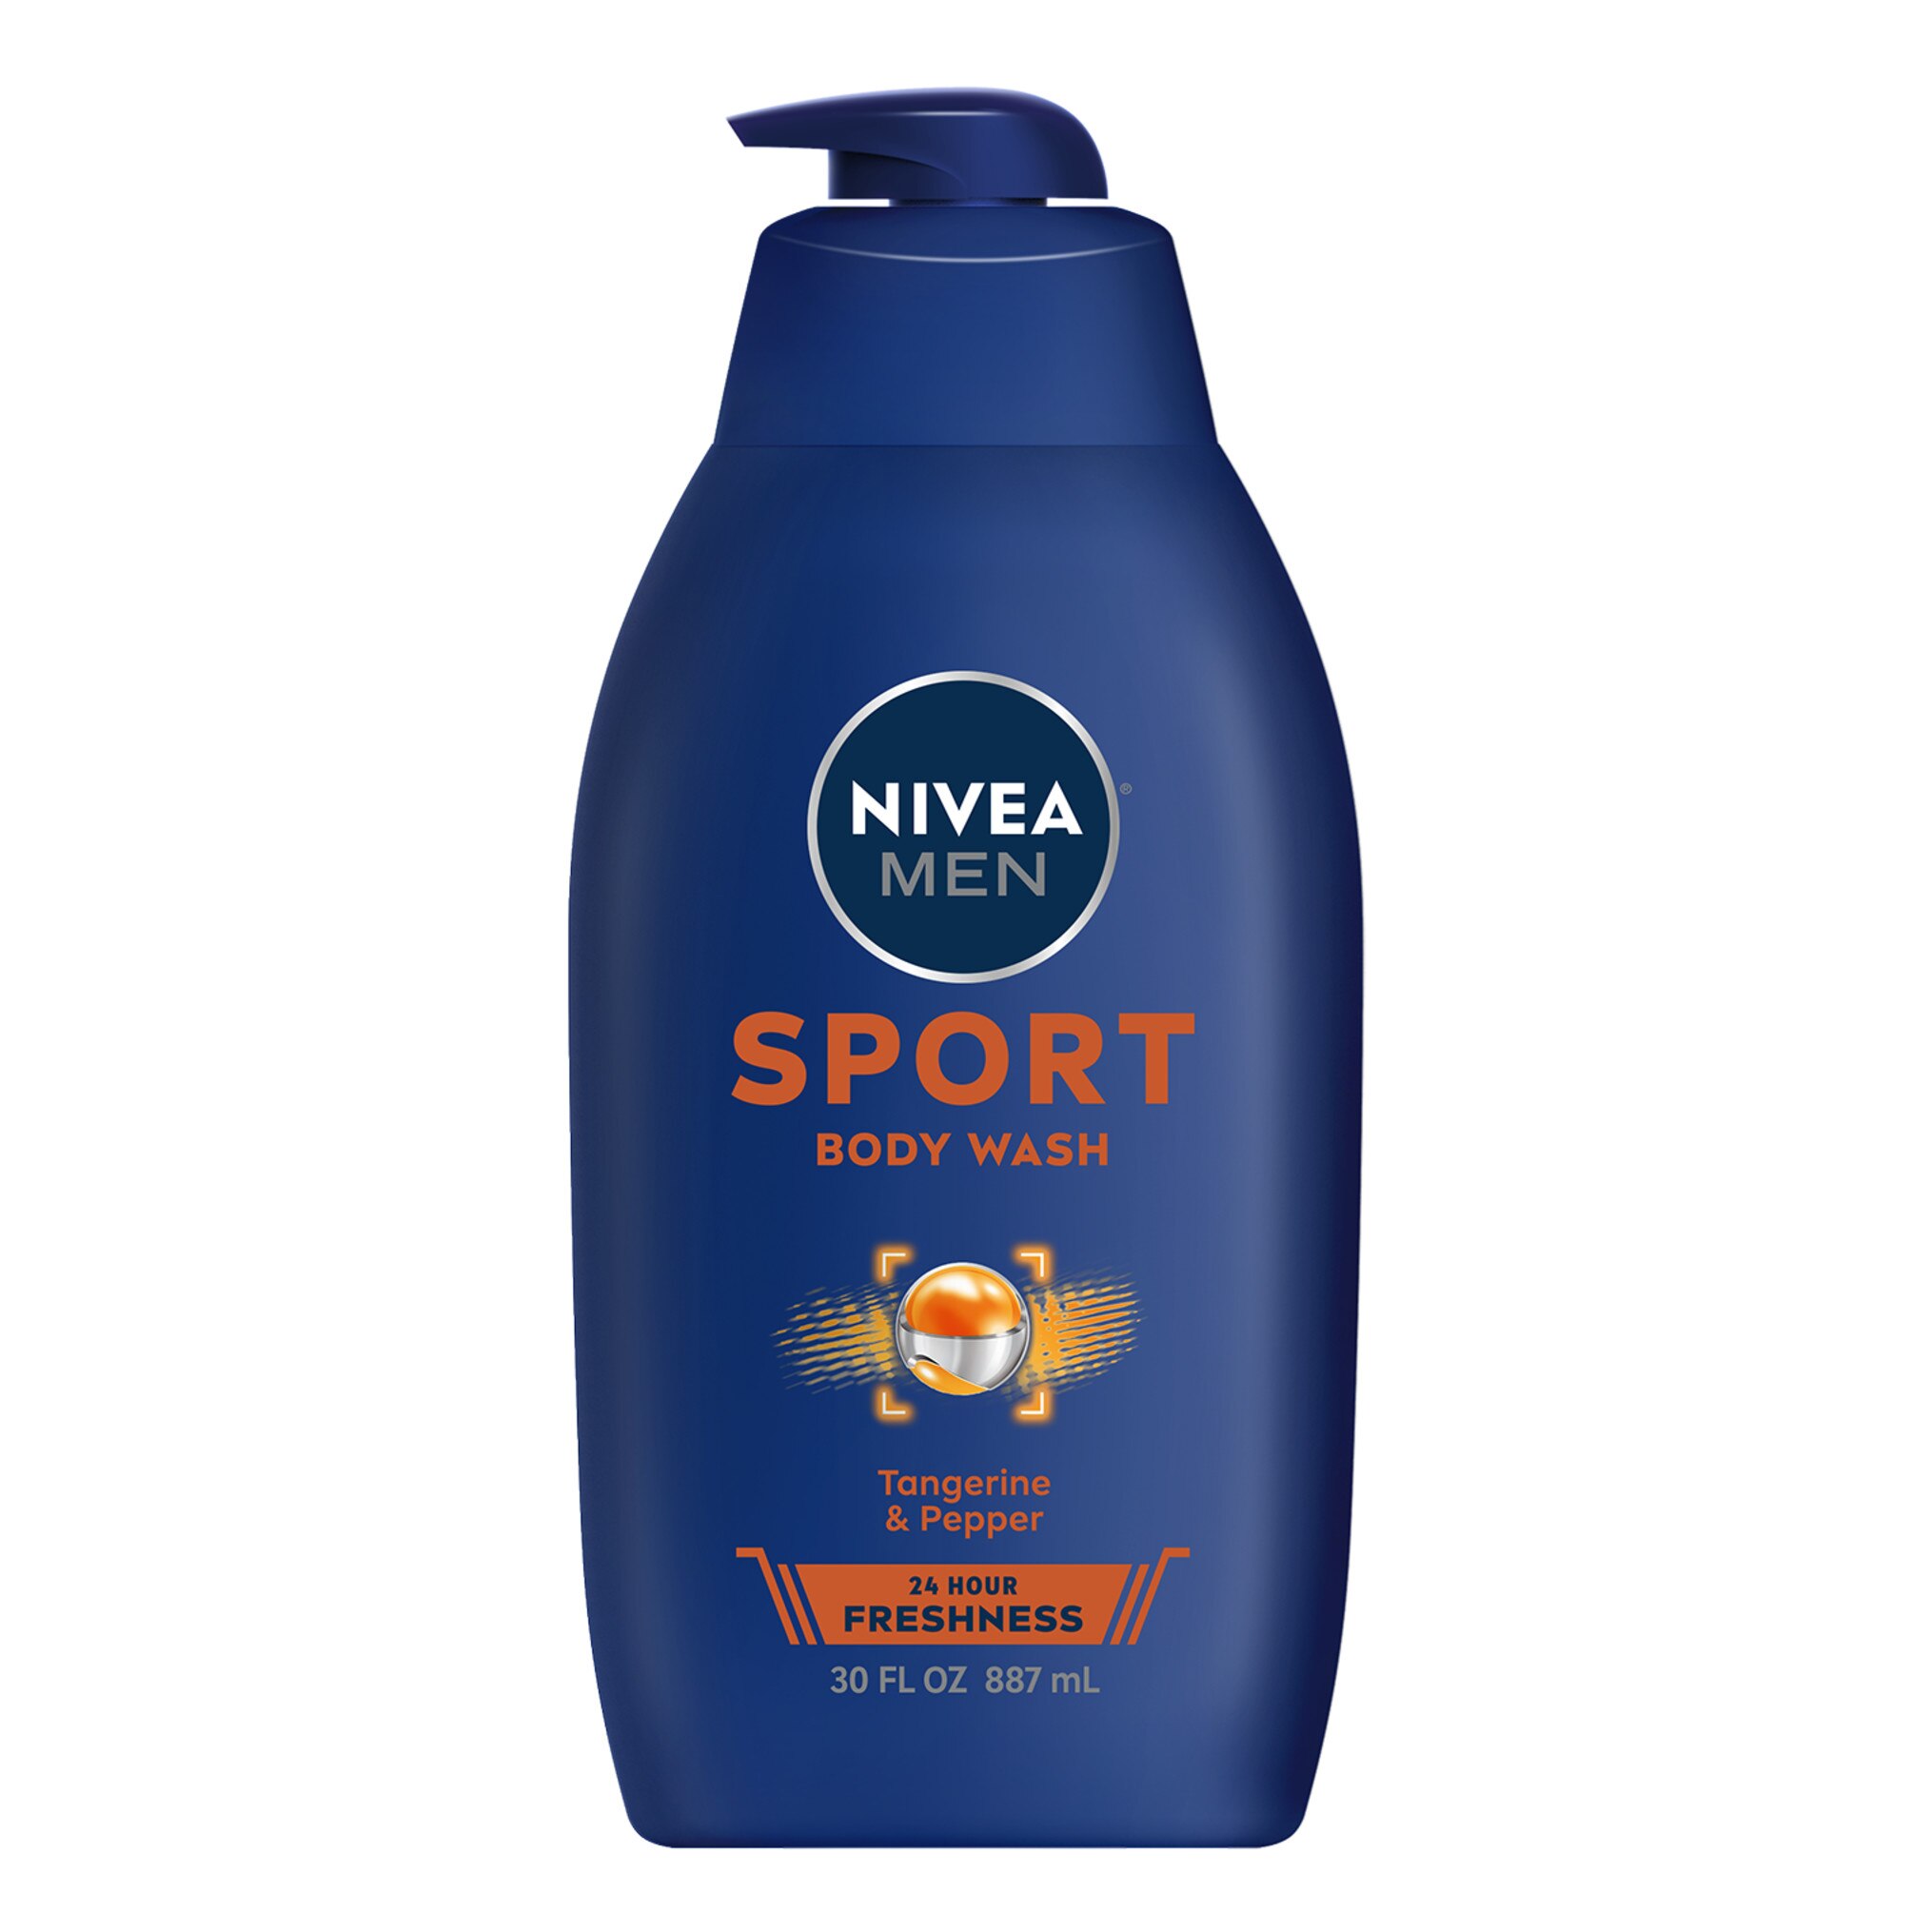 NIVEA MEN 3-in-1 Body Wash Sport